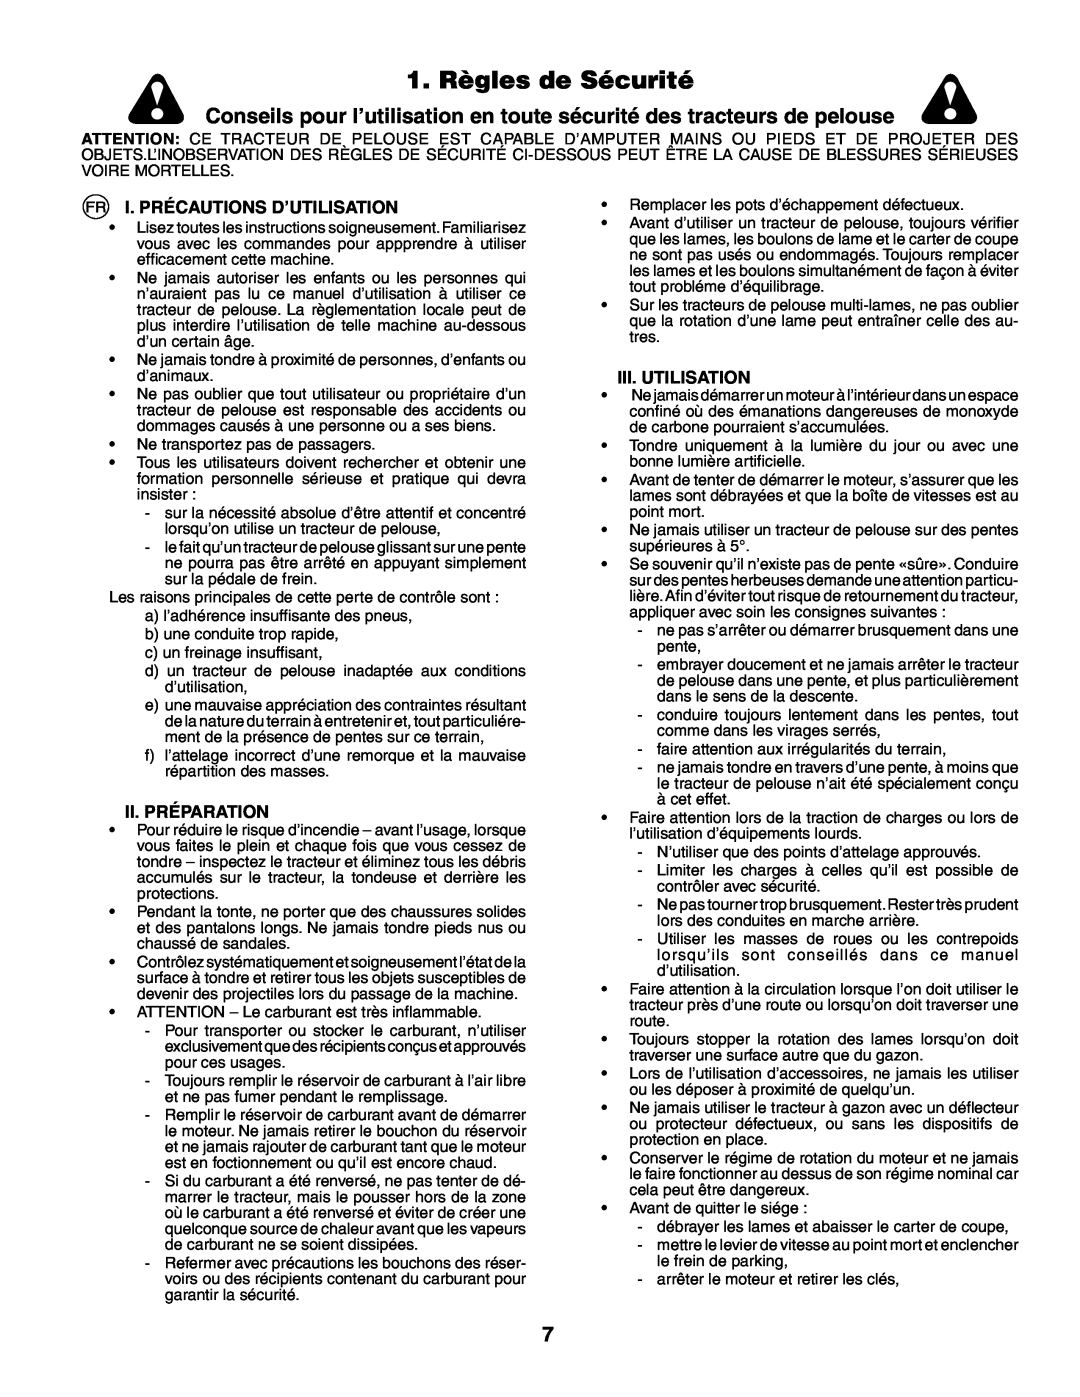 Husqvarna YTH210XP 1. Règles de Sécurité, I. Précautions D’Utilisation, Ii. Préparation, Iii. Utilisation 